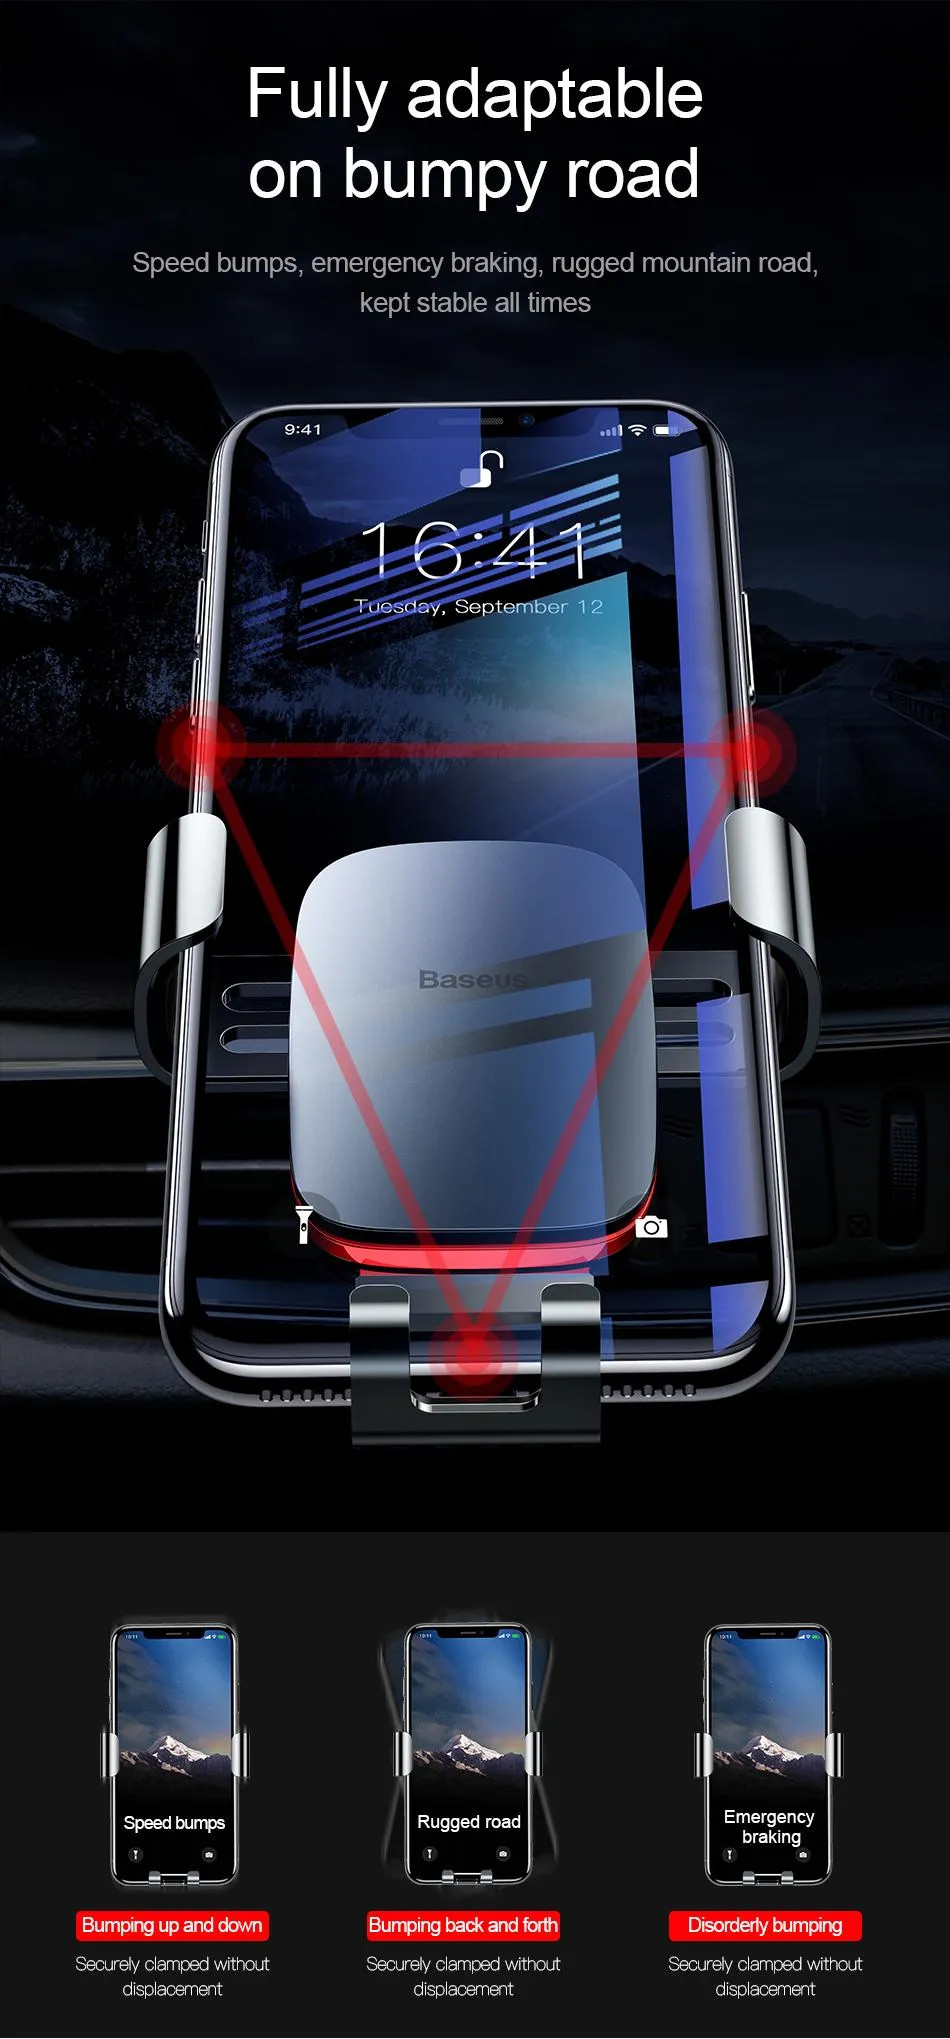 Giá đỡ điện thoại khóa tự động cho xe hơi Baseus Universal Car